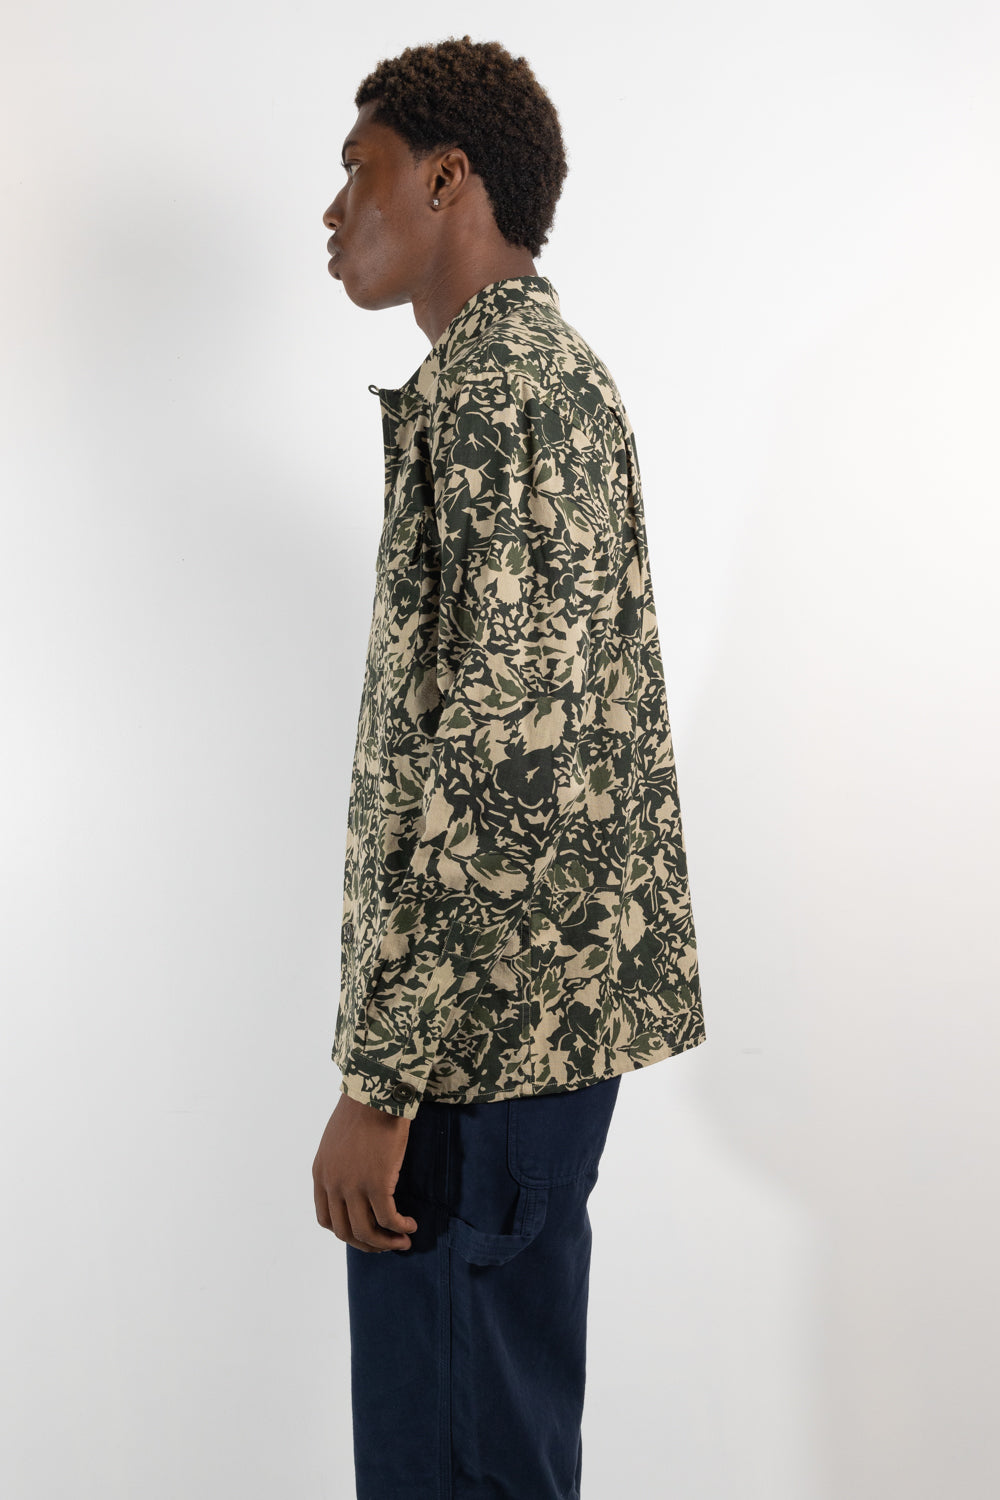 Mens shirt | YMC Feather shirt | The Standard Store